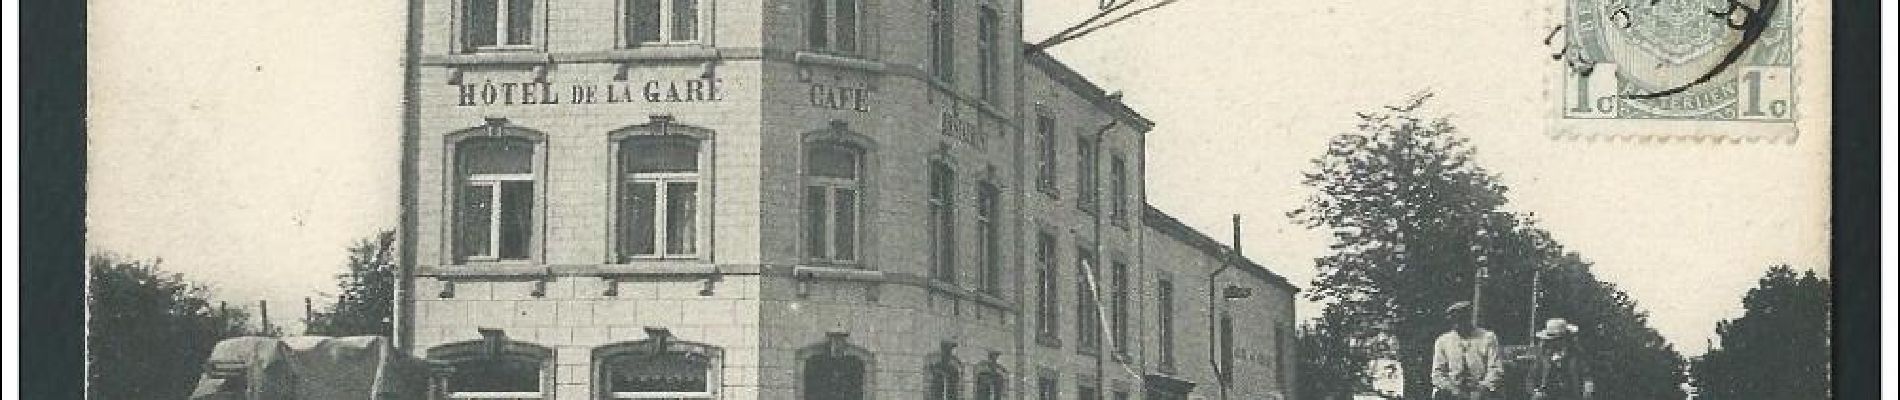 POI Neufchâteau - Café et Hôtel de la gare - Photo